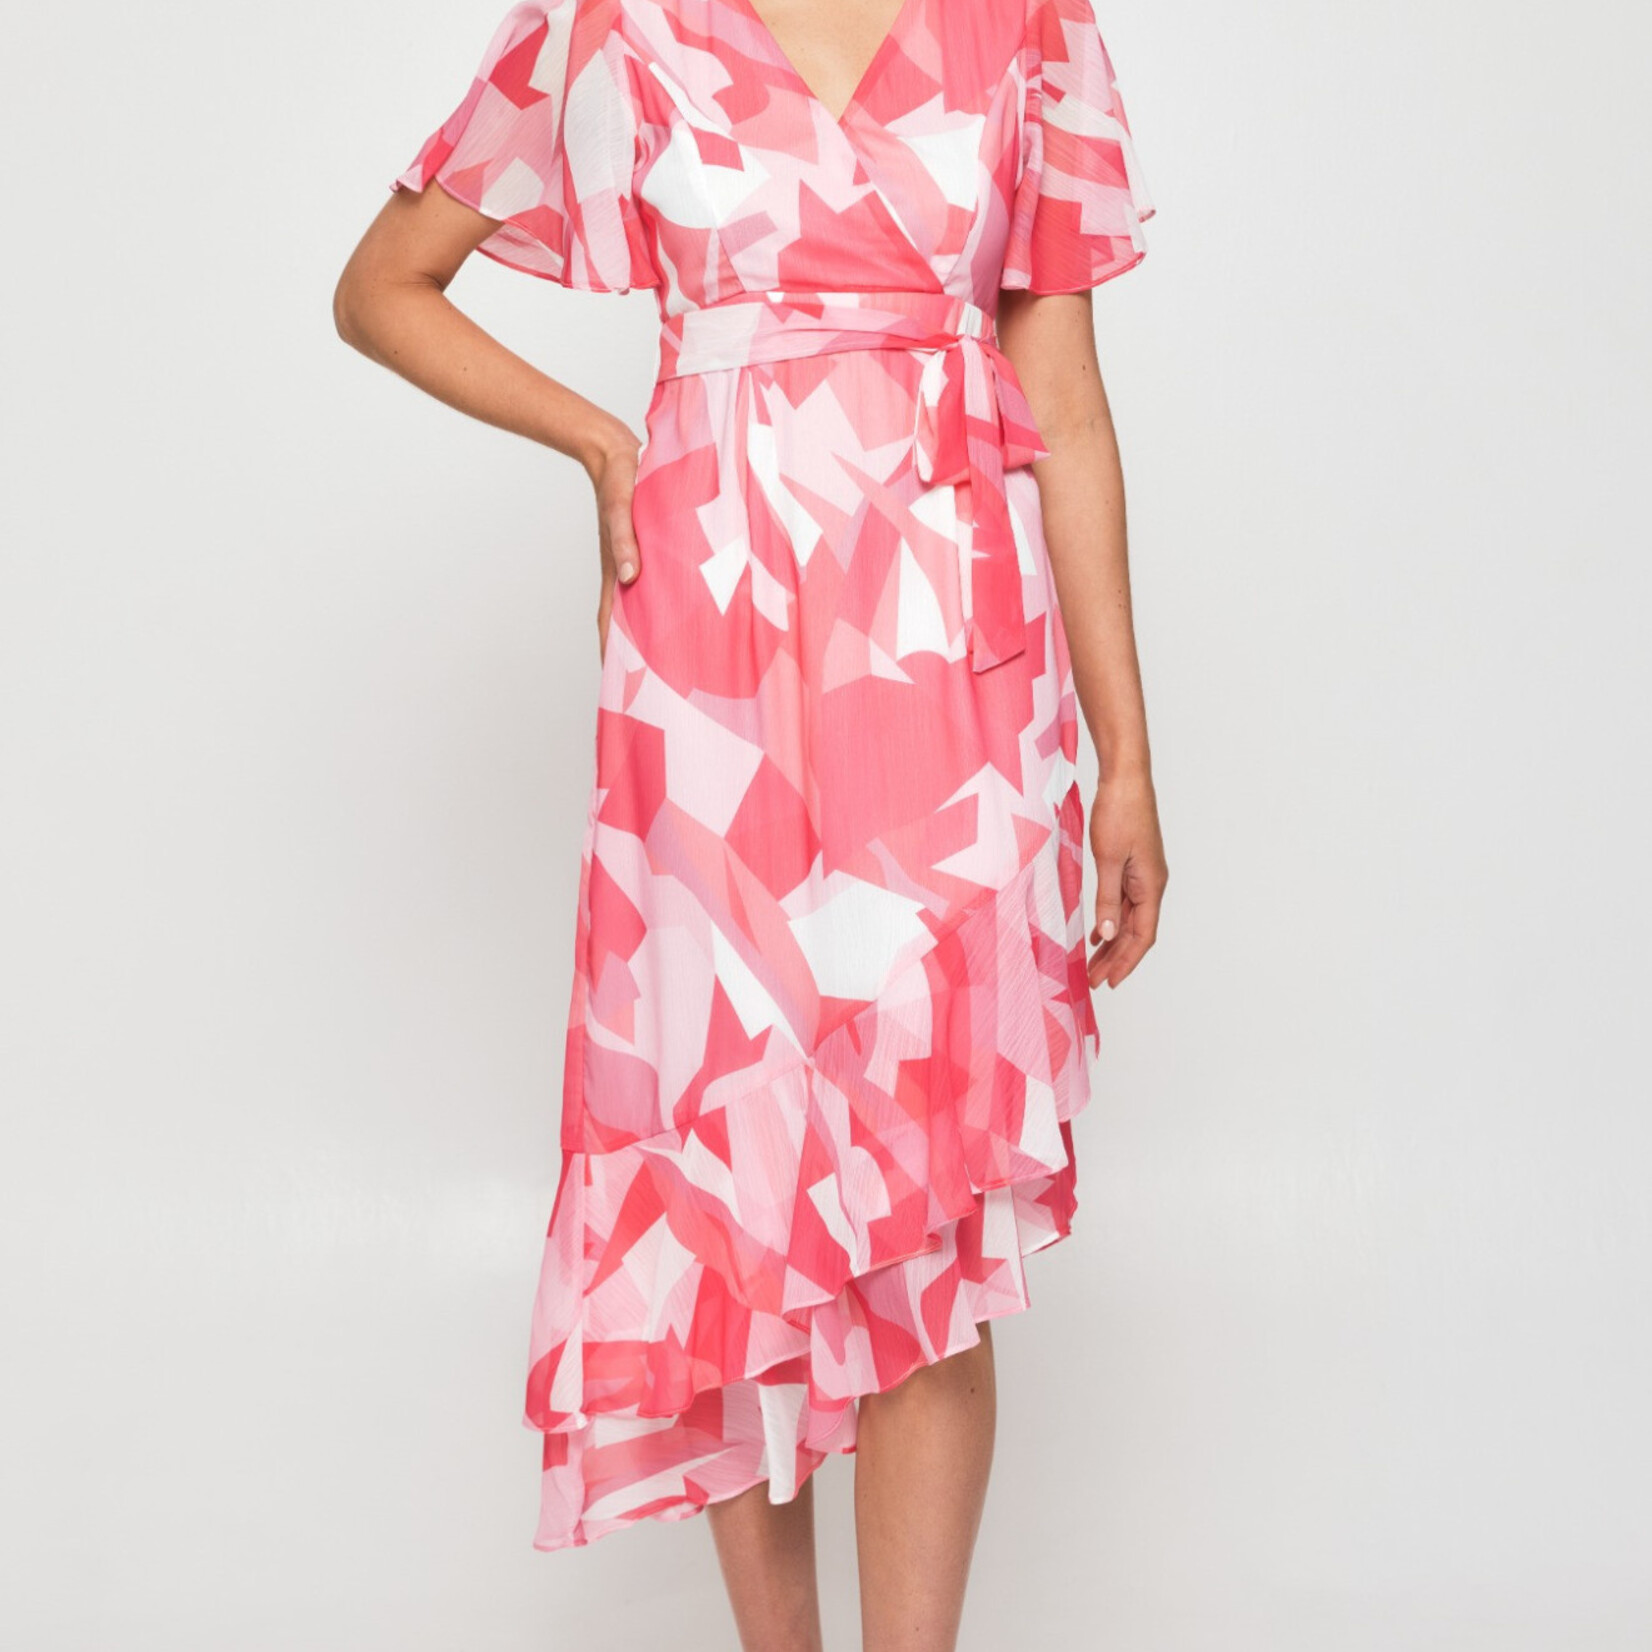 Style State Raspberry Abstract Chiffon Ruffled Dress